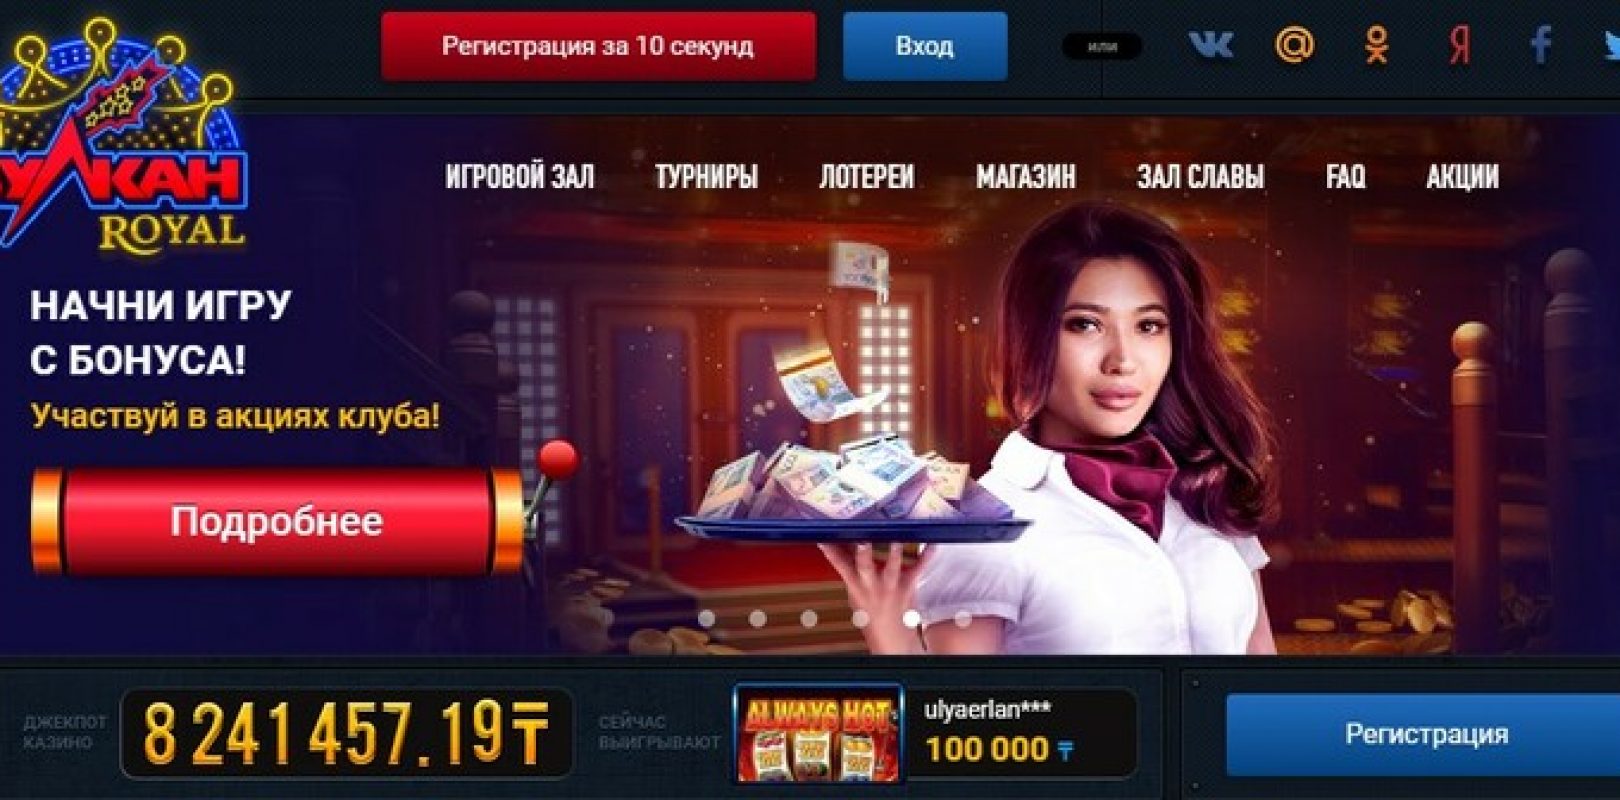 Налог на выигрыш в казино в казахстане кристалл казино играть онлайн бесплатно